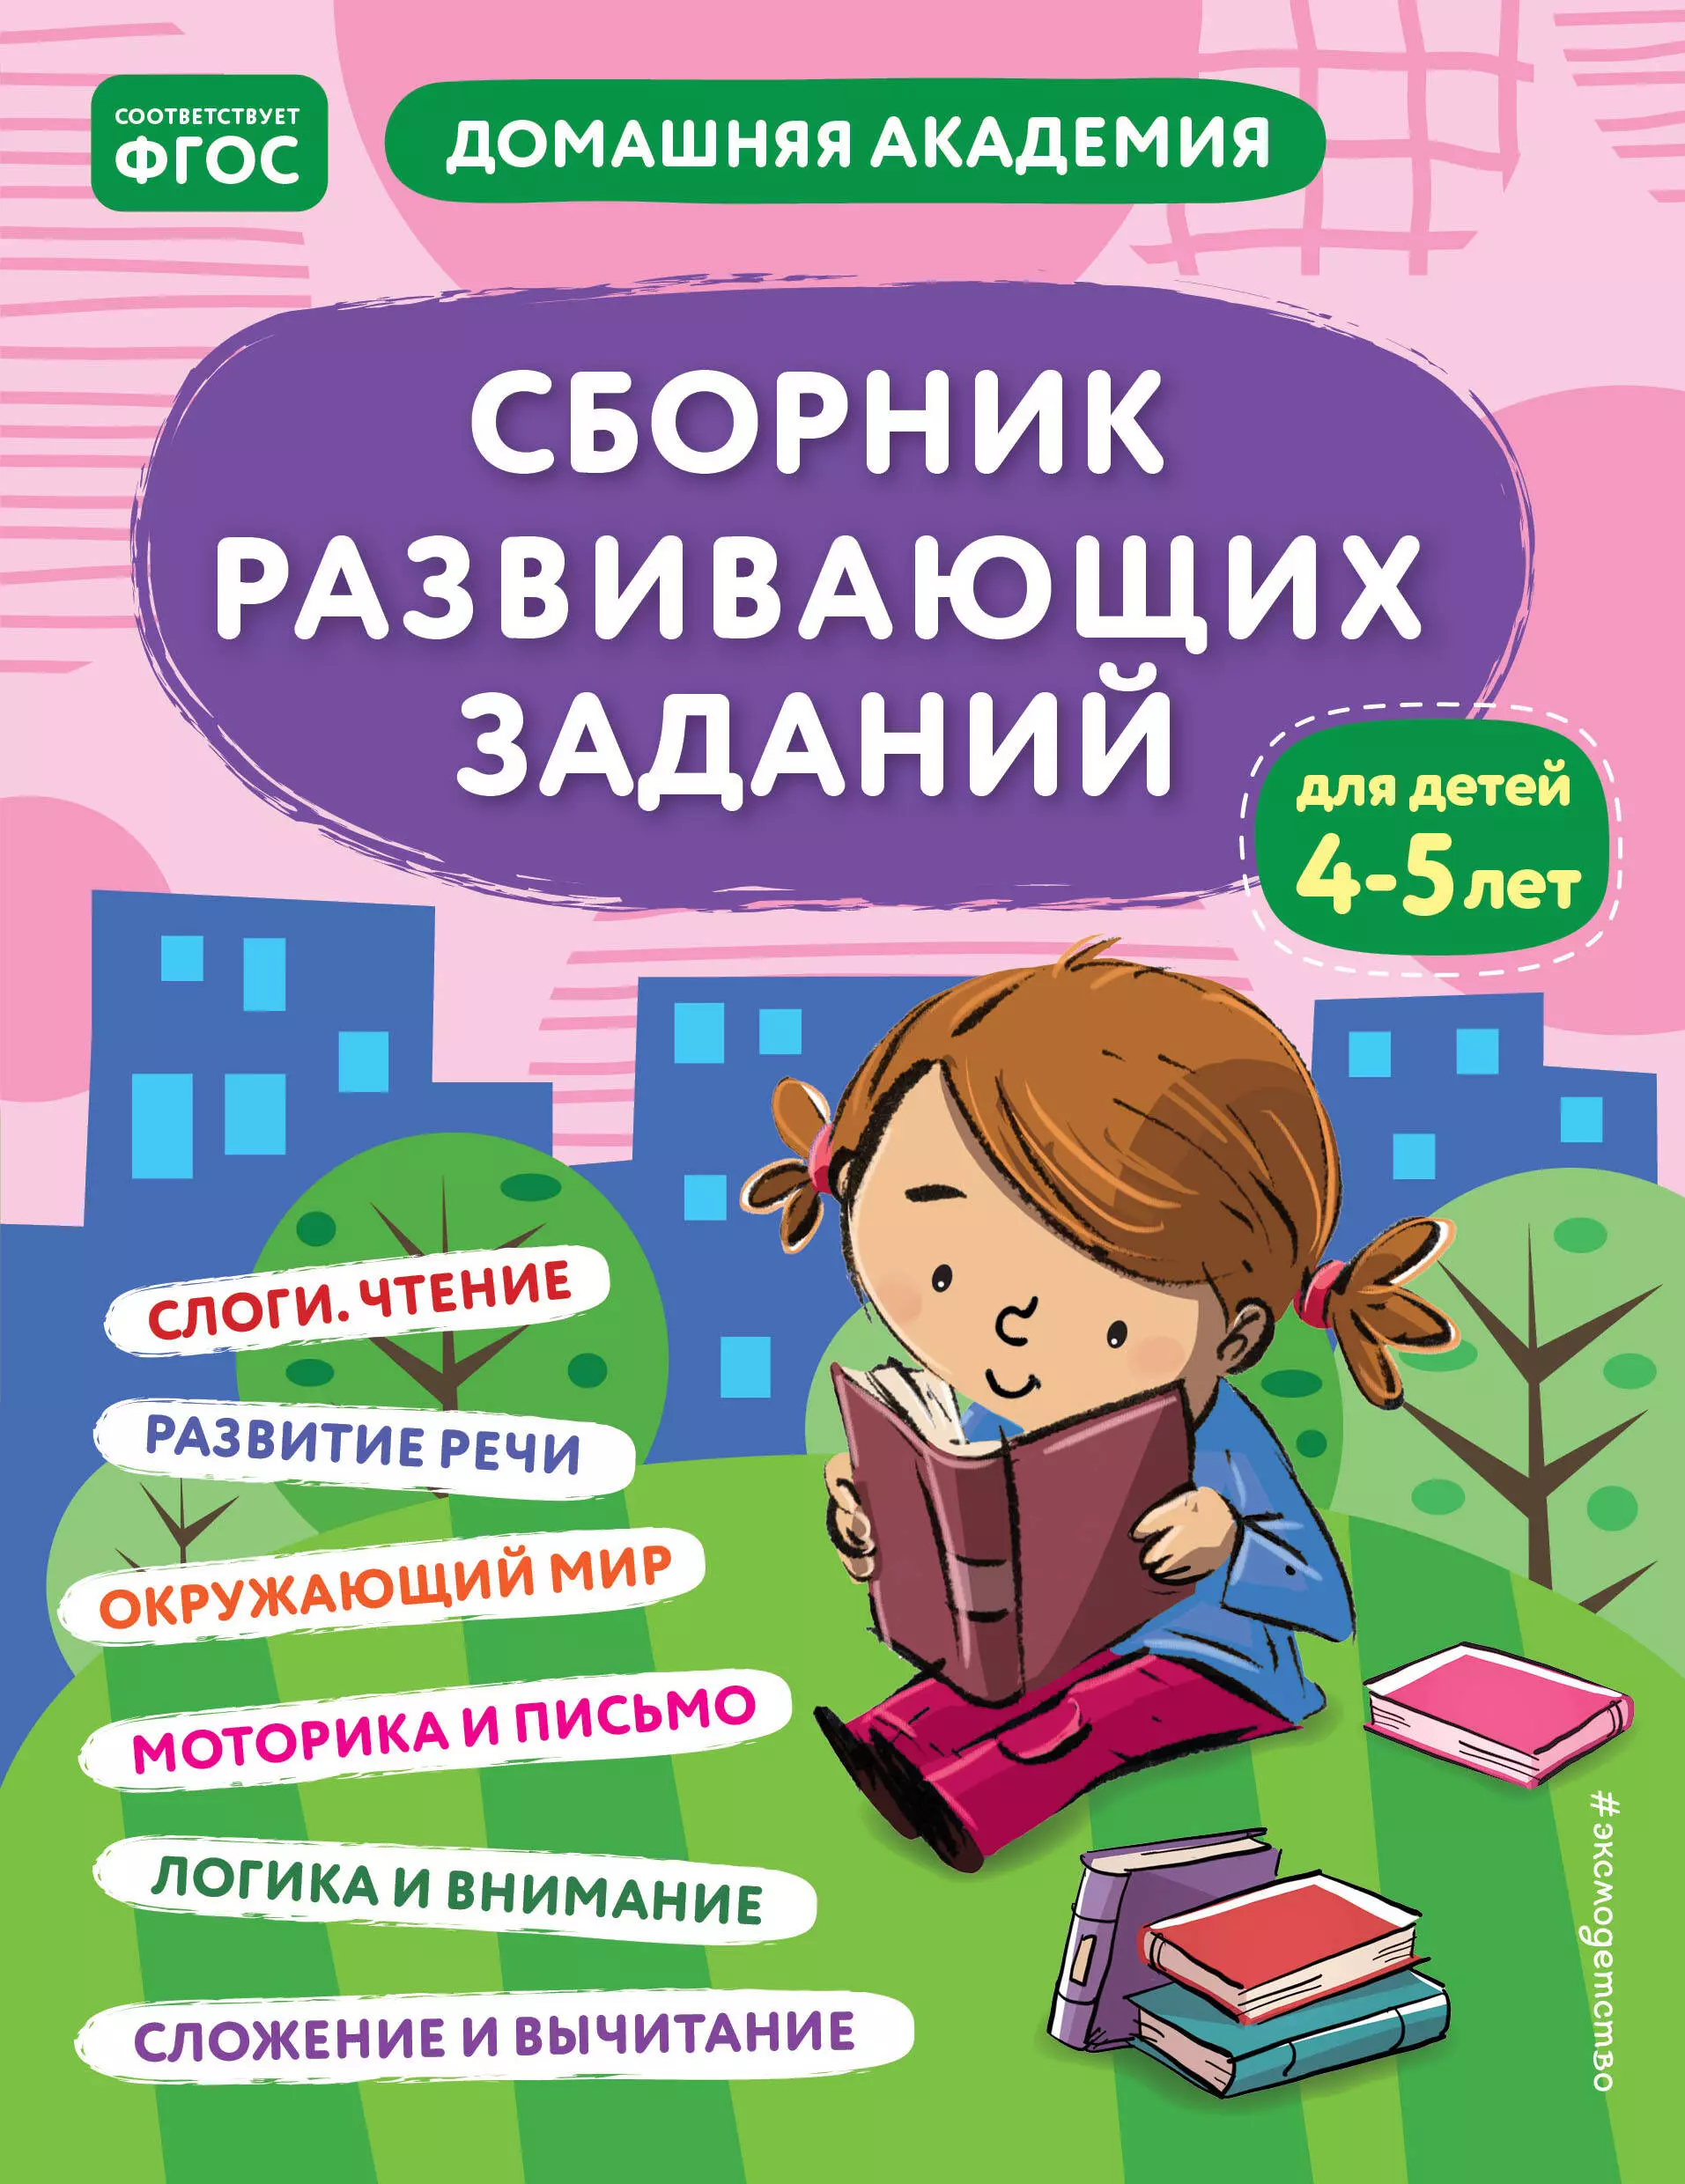 Сборник развивающих заданий для детей 4-5 лет обучалочка сборник развивающих заданий для детей 4 5 лет